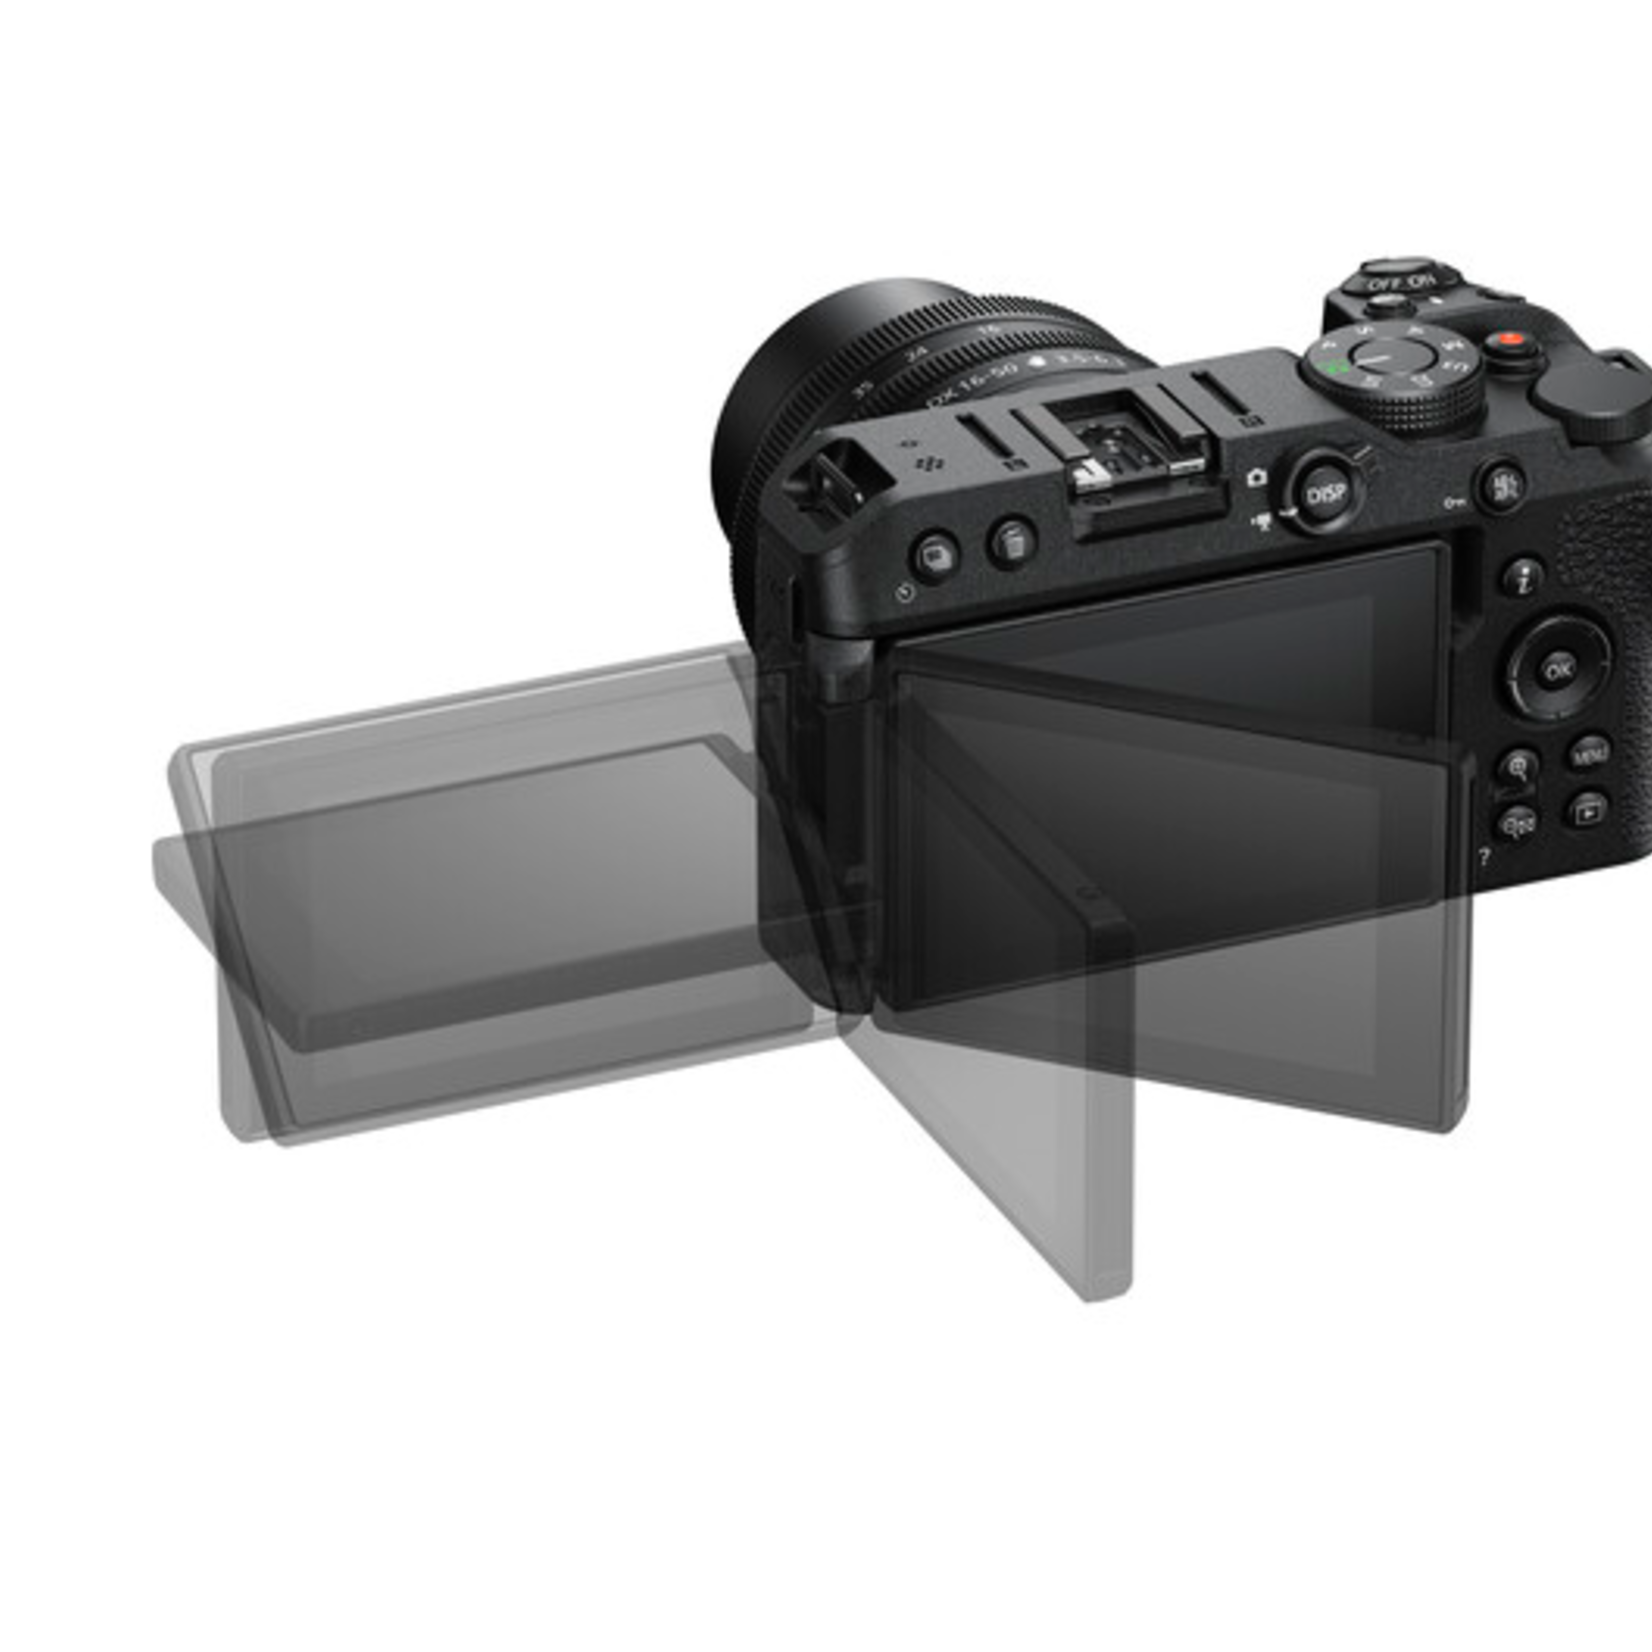 Dodd Camera - NIKON Z30 w/ 16-50mm f/3.5-6.3 VR & 50-250mm f/4.5-6.3 VR